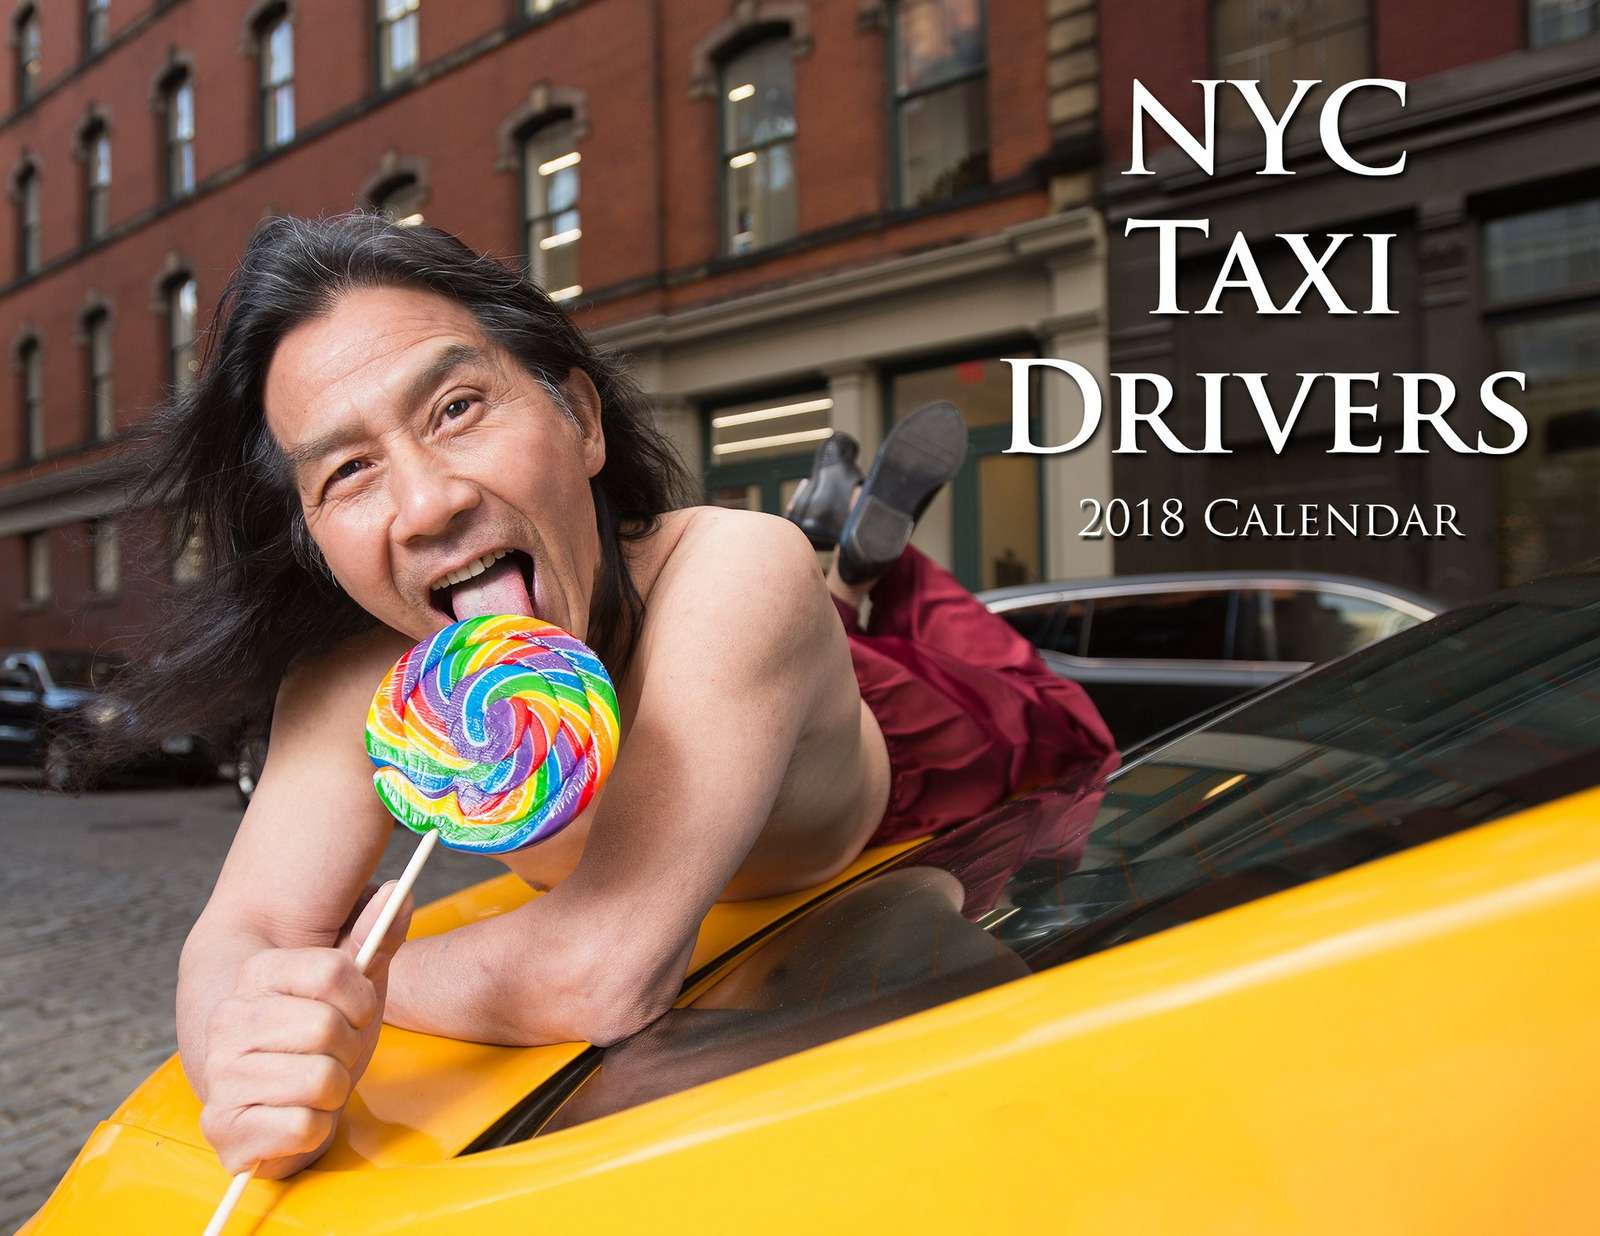 Осторожно! Некрасивые мужчины! Пародийный календарь таксистов Нью-Йорка — фото 818746